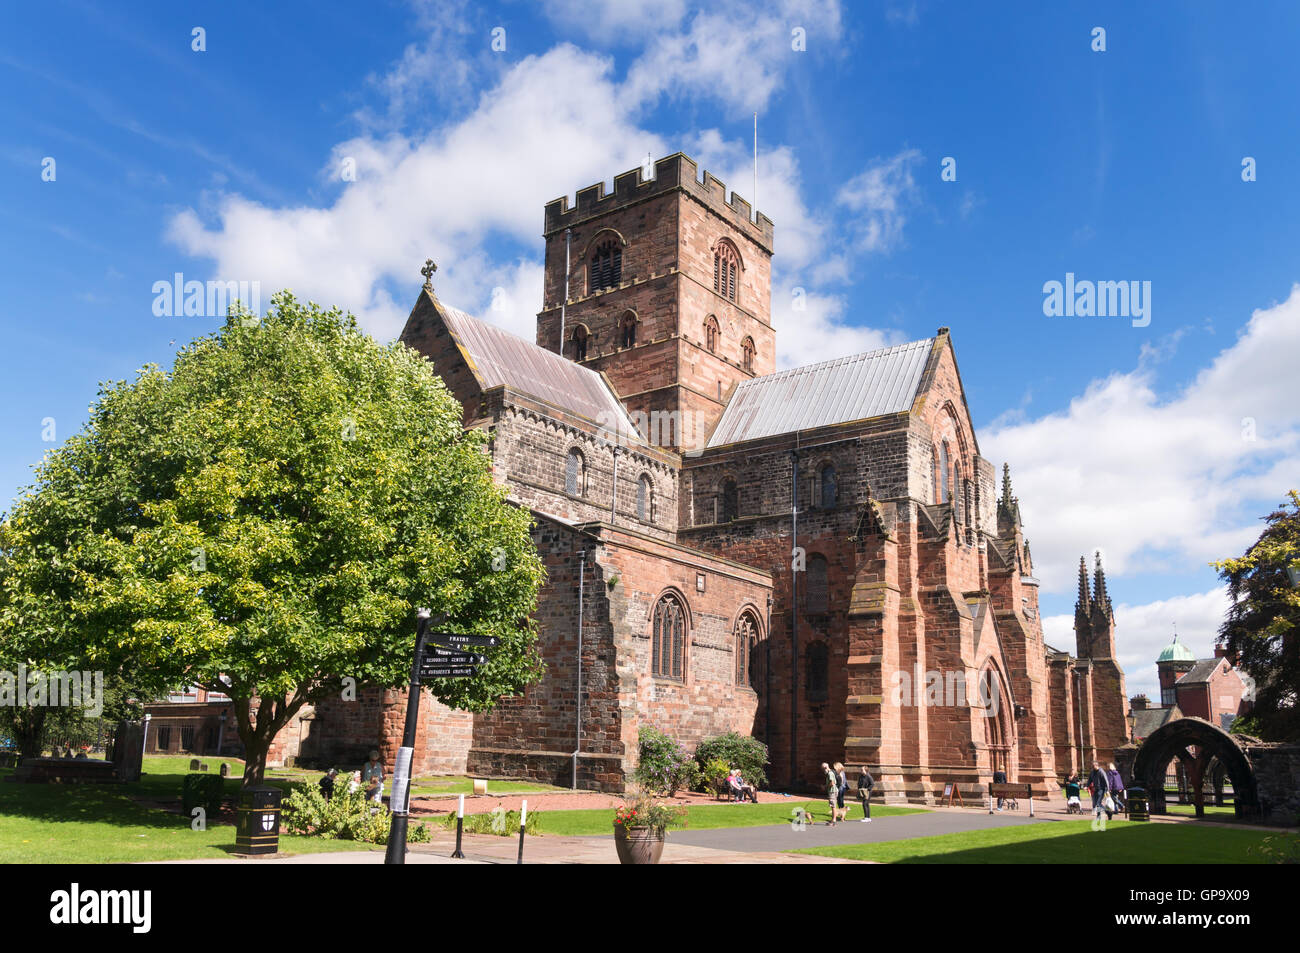 Vue depuis le sud-ouest de la cathédrale de Carlisle, Cumbria, England, UK Banque D'Images